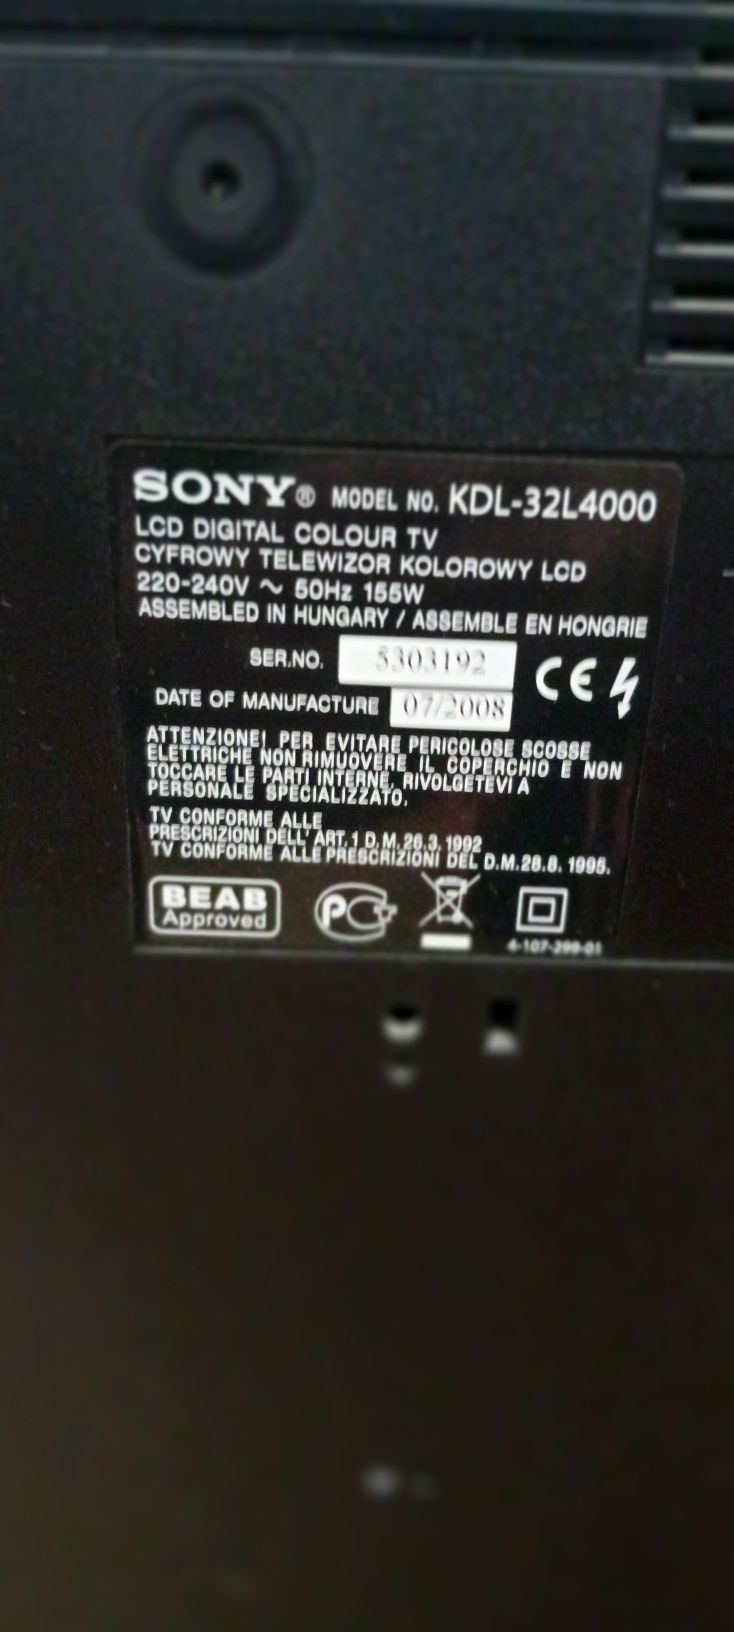 TV Sony usada em bom estado